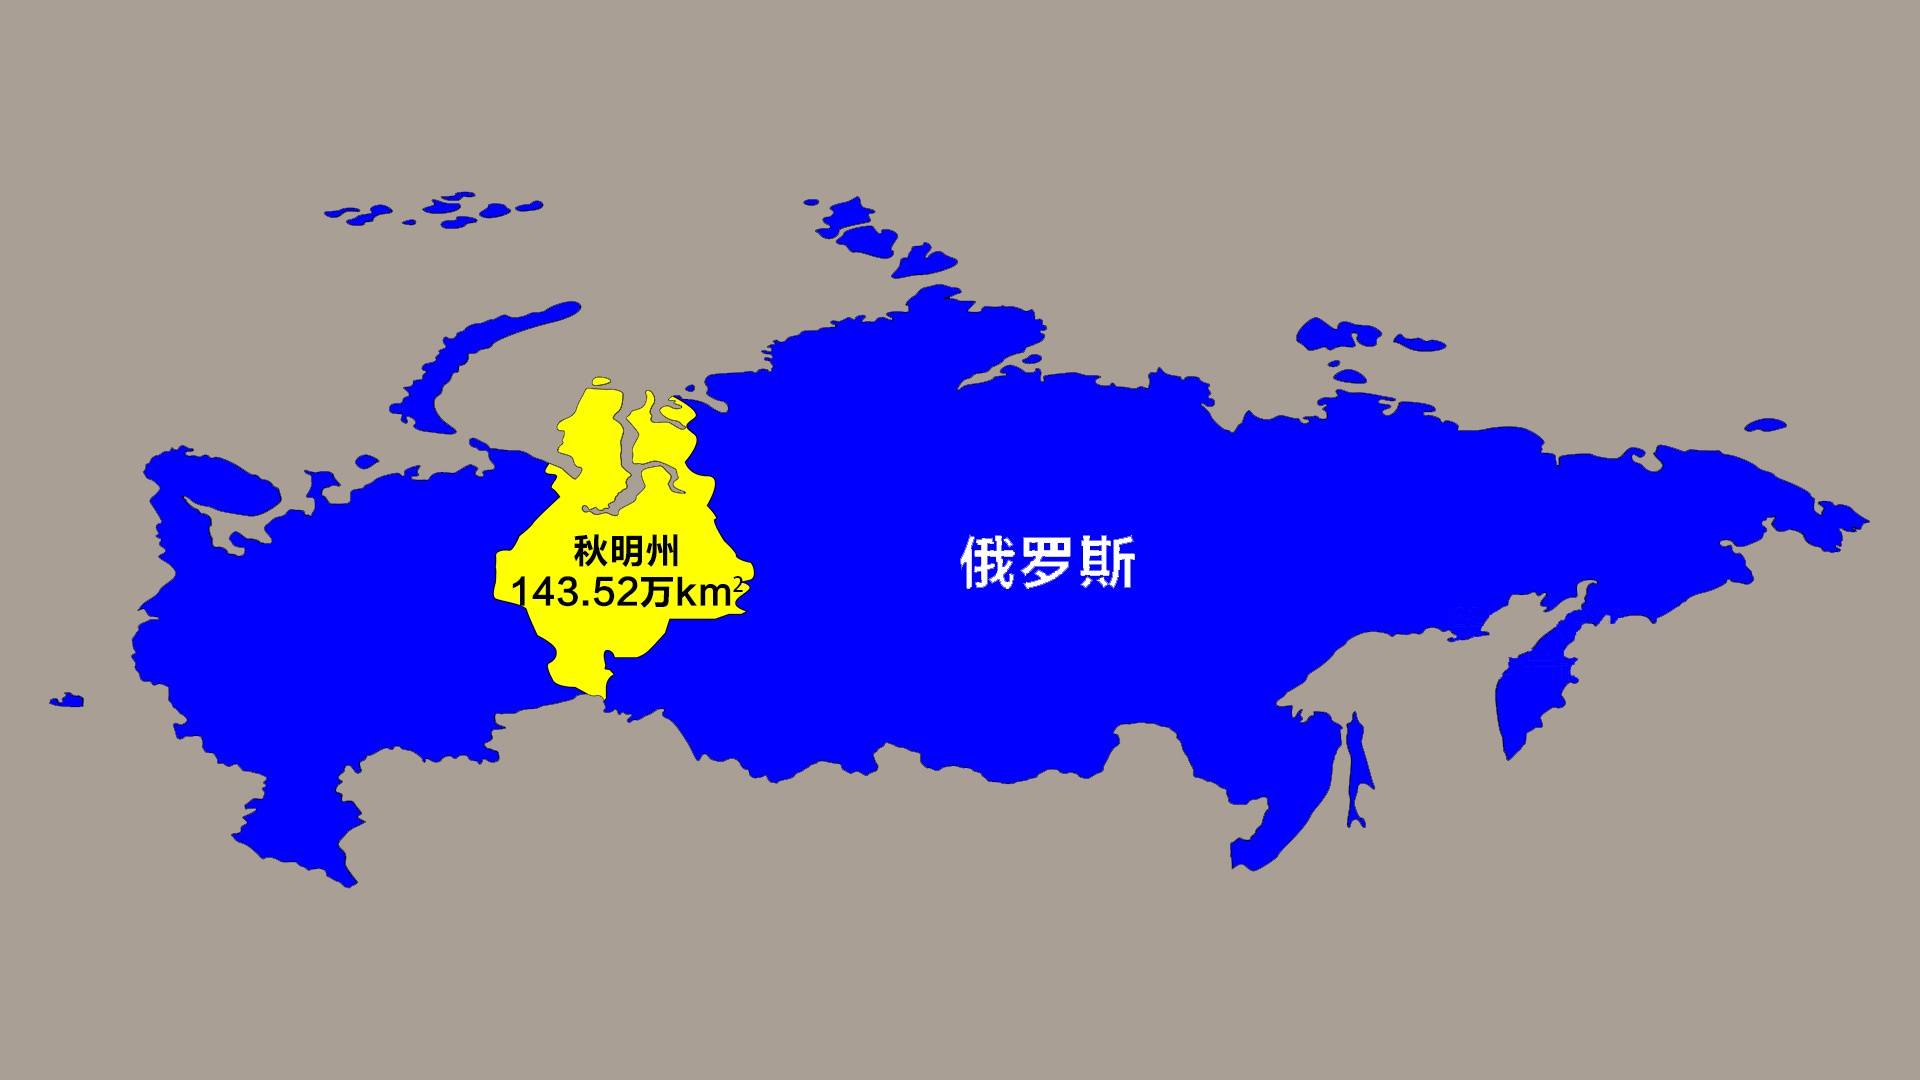 俄罗斯哪些地区的人均gdp高于莫斯科?